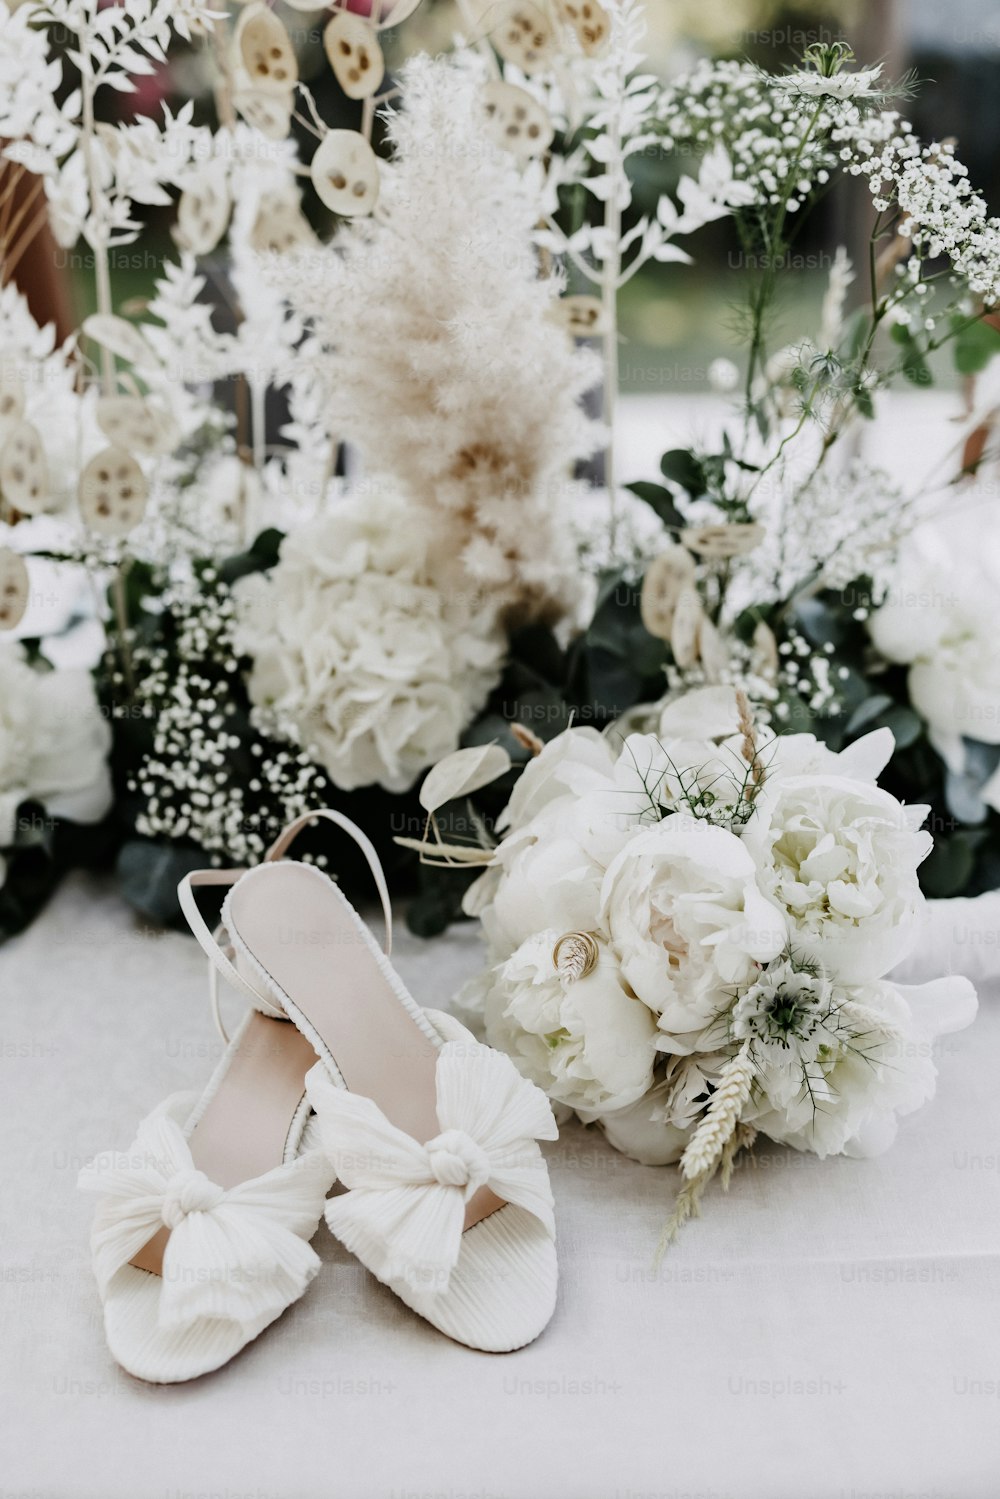 Un par de zapatos blancos sentados encima de una mesa